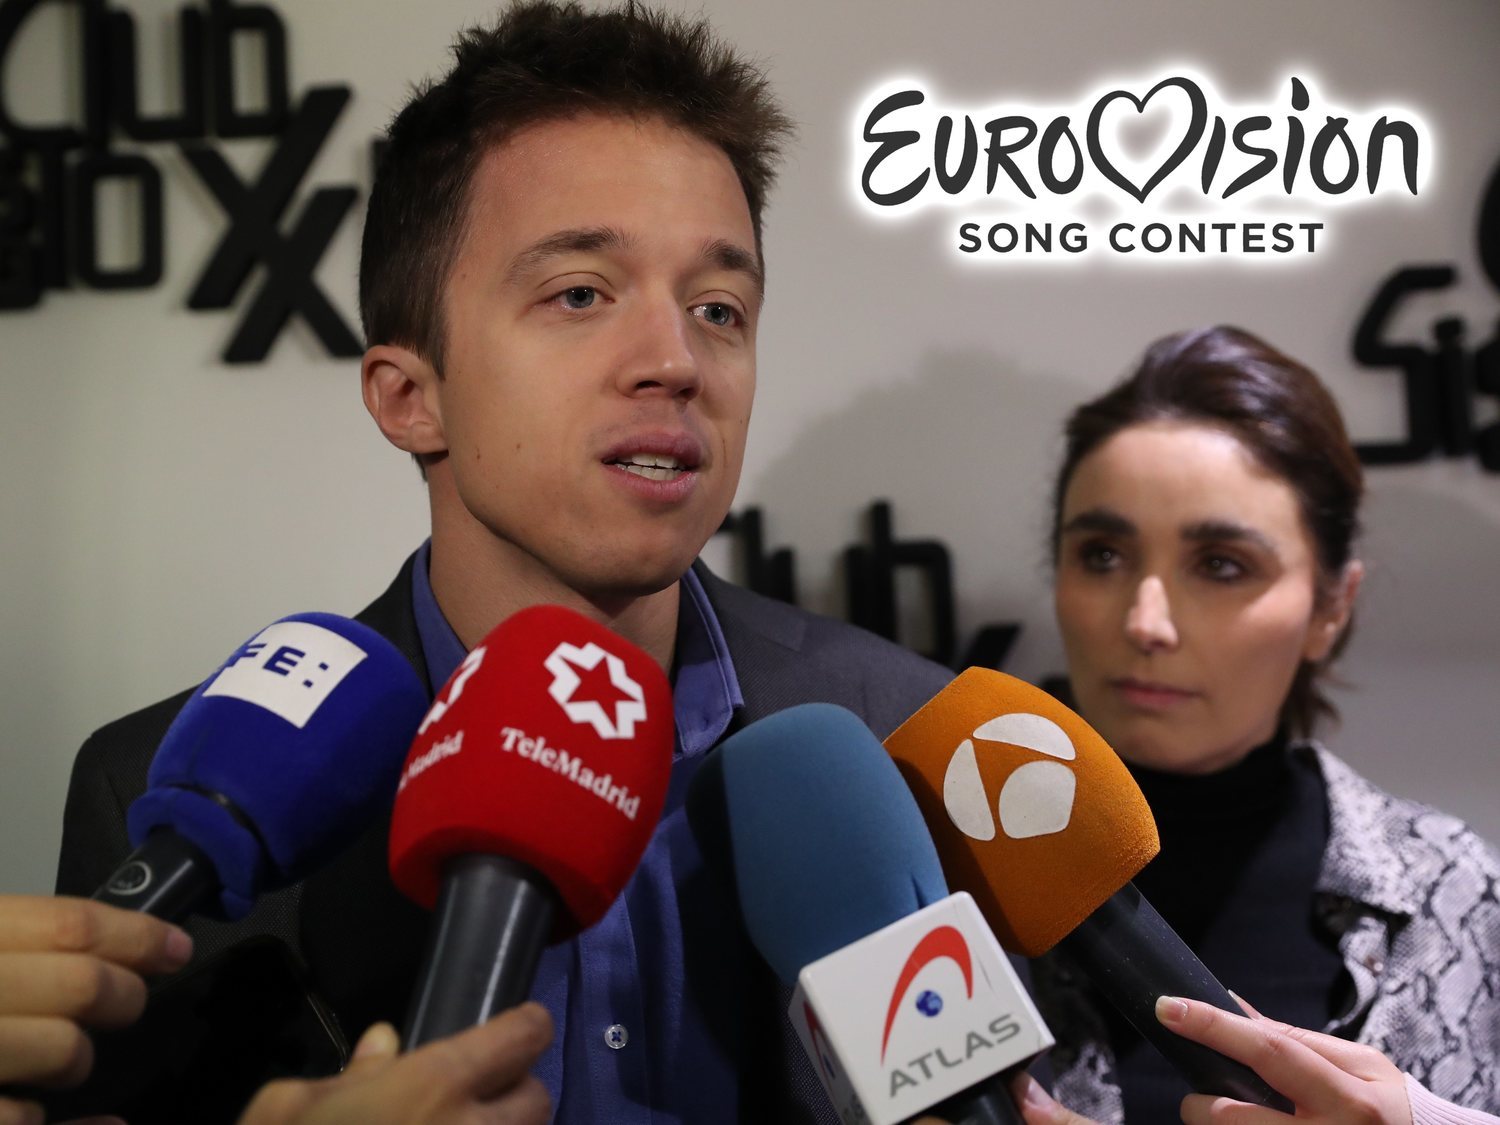 Errejón califica Eurovisión como "bochorno" para compararlo con el último debate electoral